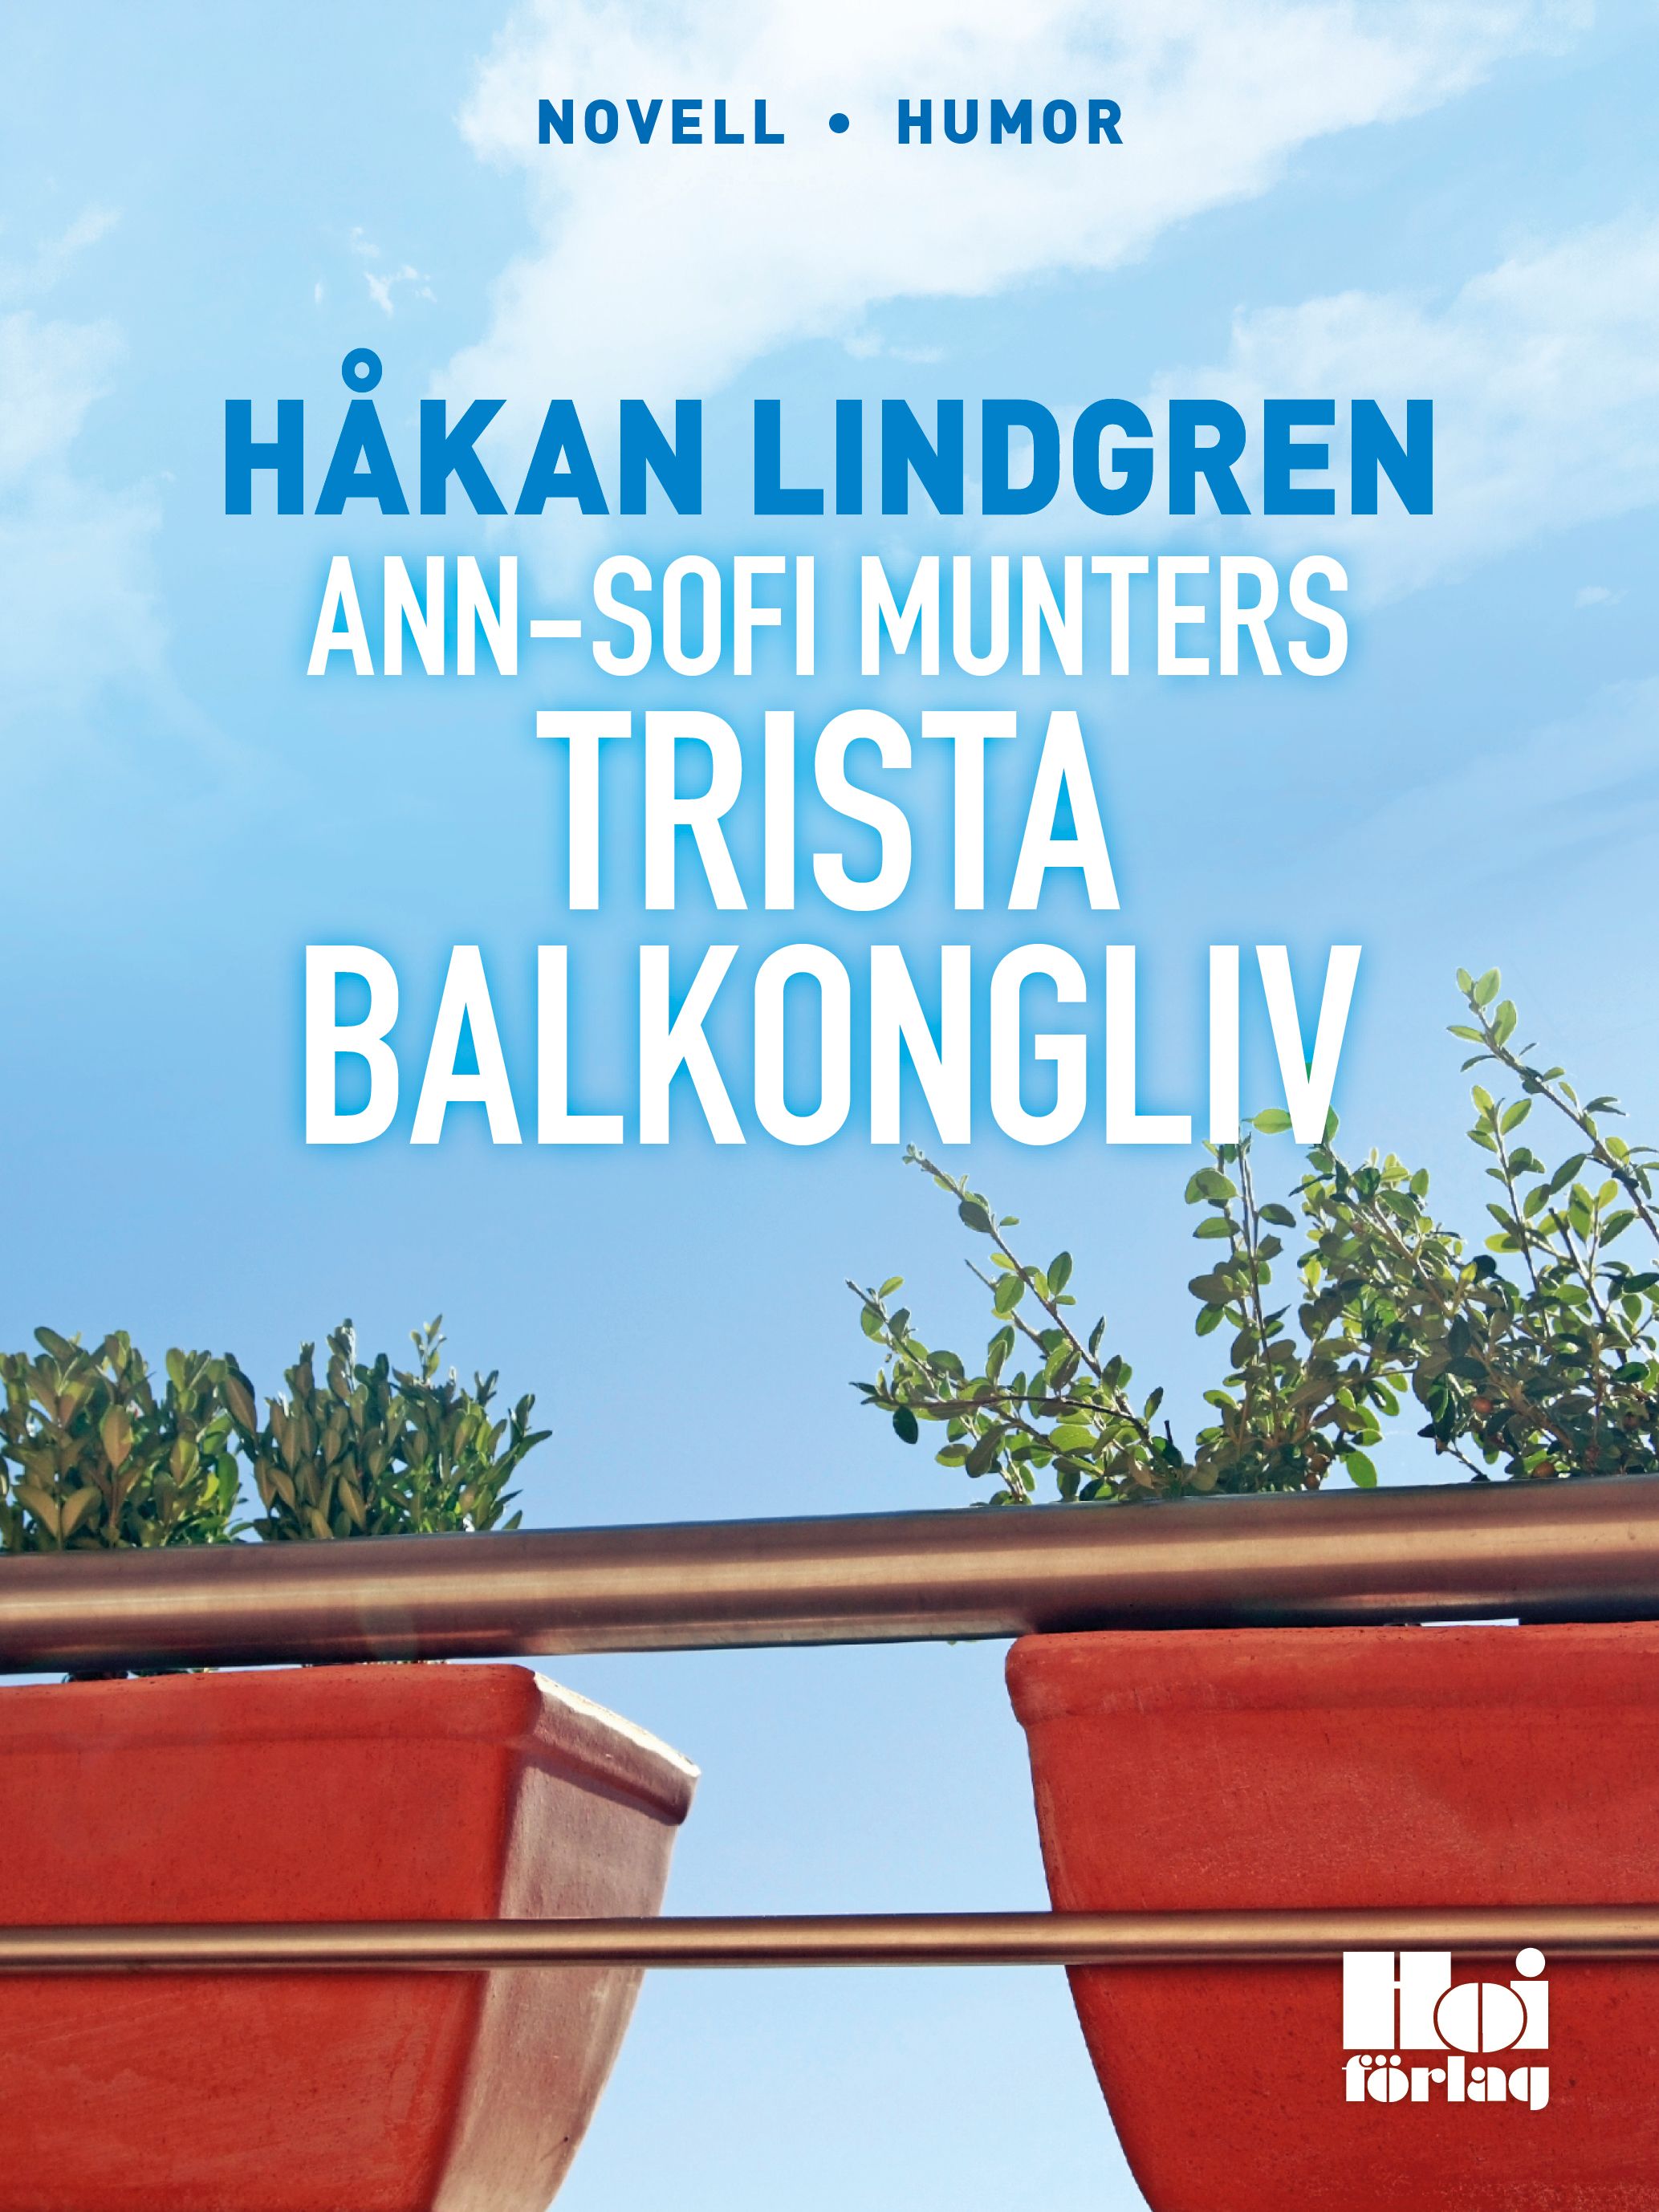 Ann-Sofi Munters trista balkongliv, e-bog af Håkan Lindgren